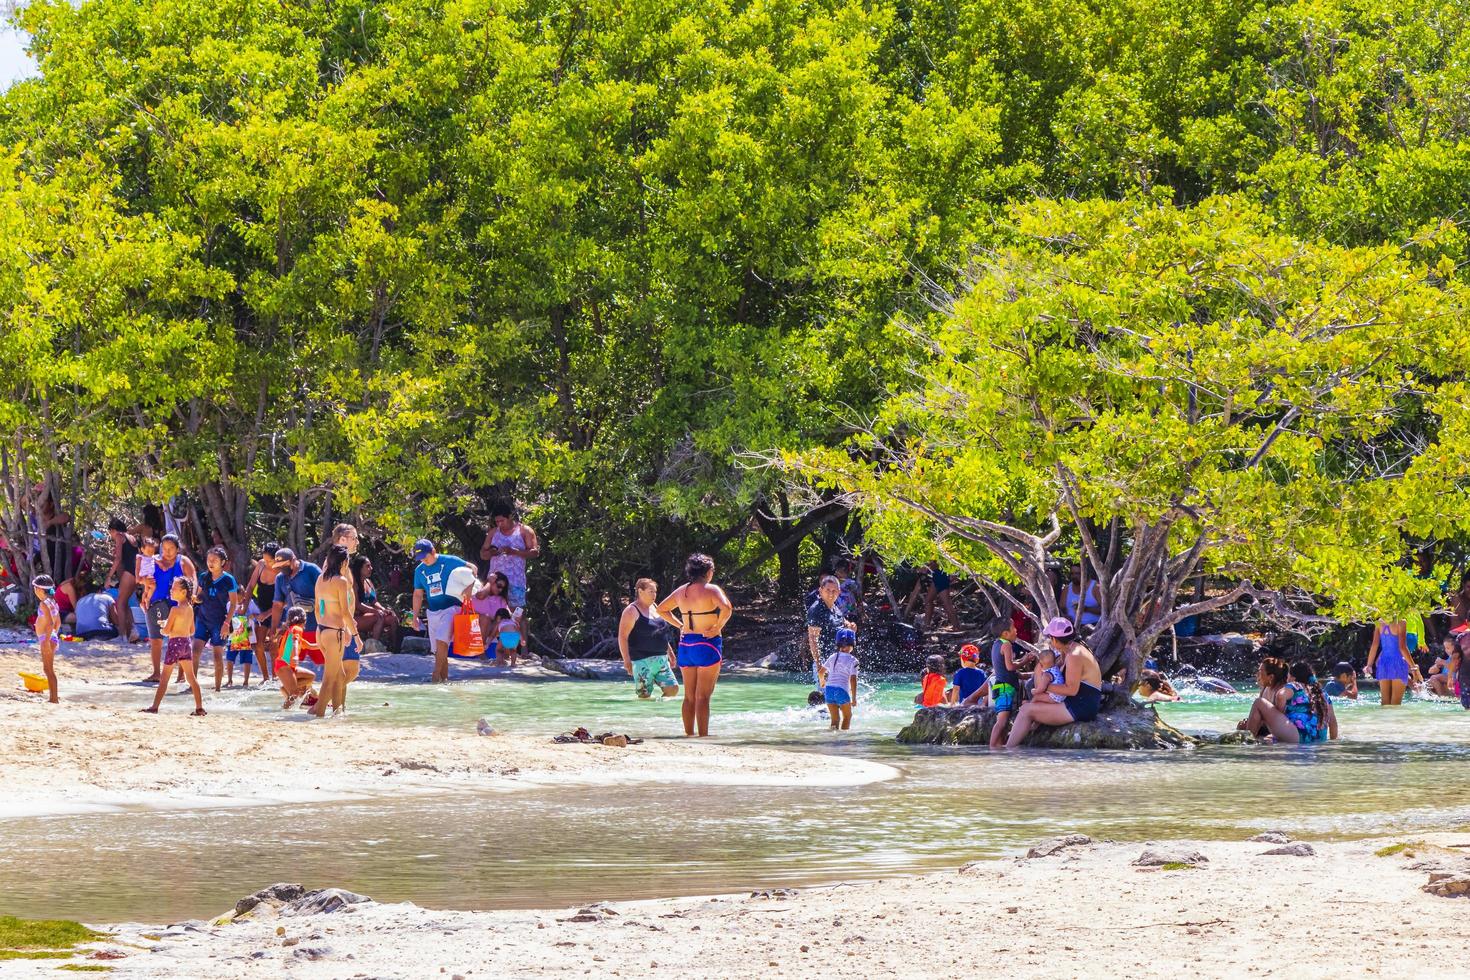 playa del carmen, méxico, 28 de maio de 2021 - praia do méxico foto